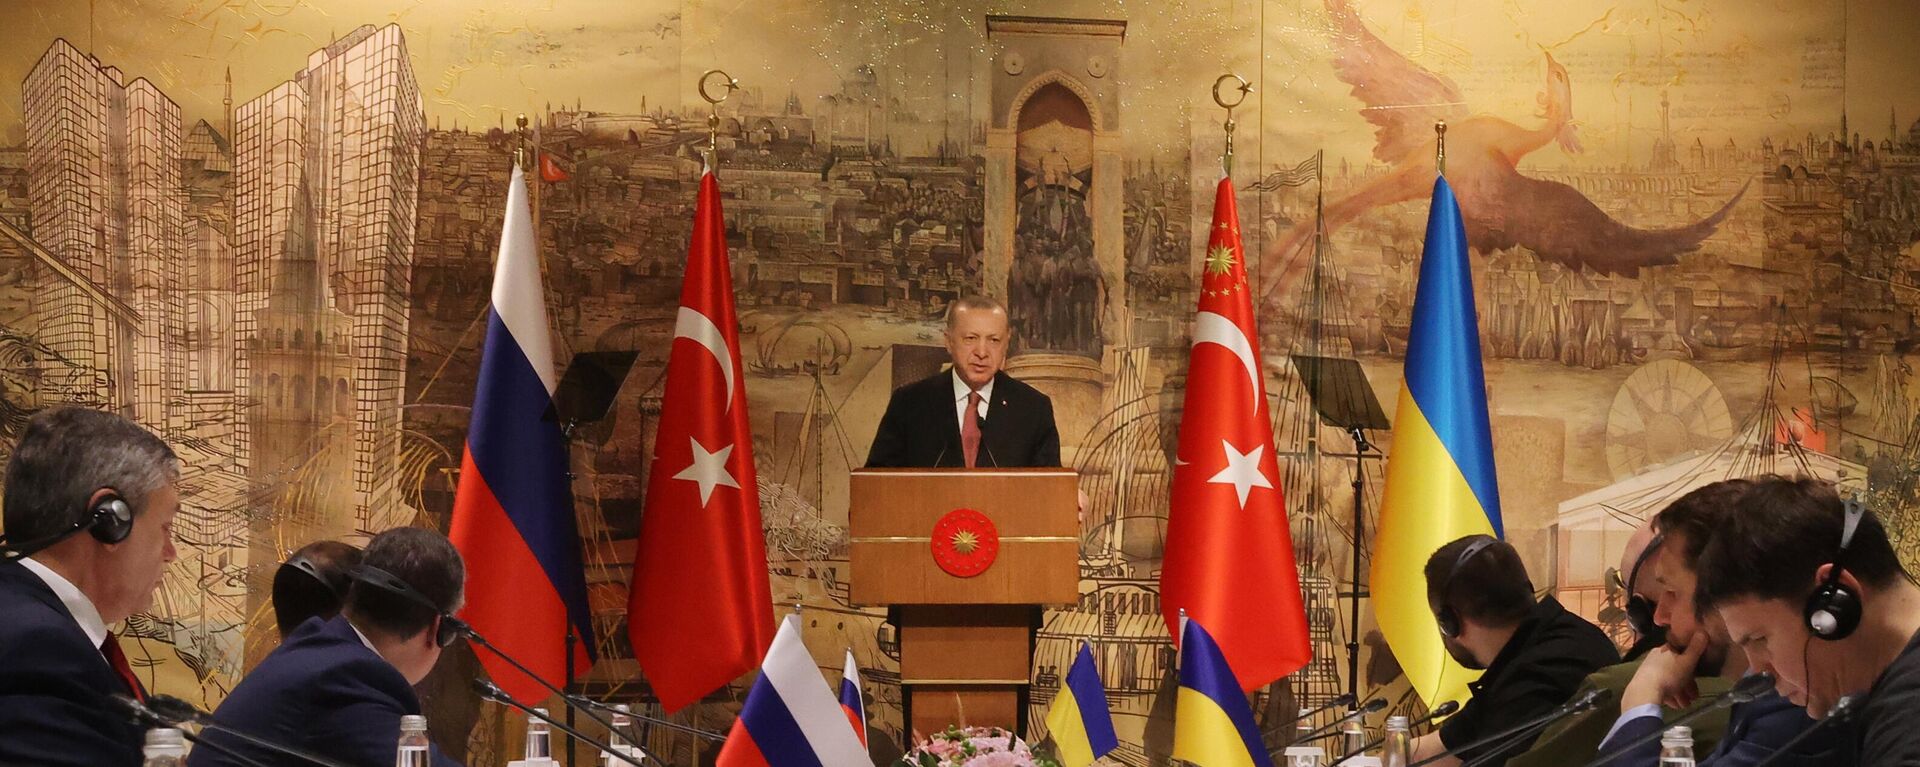 Tổng thống Thổ Nhĩ Kỳ Recep Tayyip Erdogan phát biểu trong cuộc hội đàm Nga-Ukraina tại Cung điện Dolmabahce ở Istanbul. - Sputnik Việt Nam, 1920, 05.02.2023